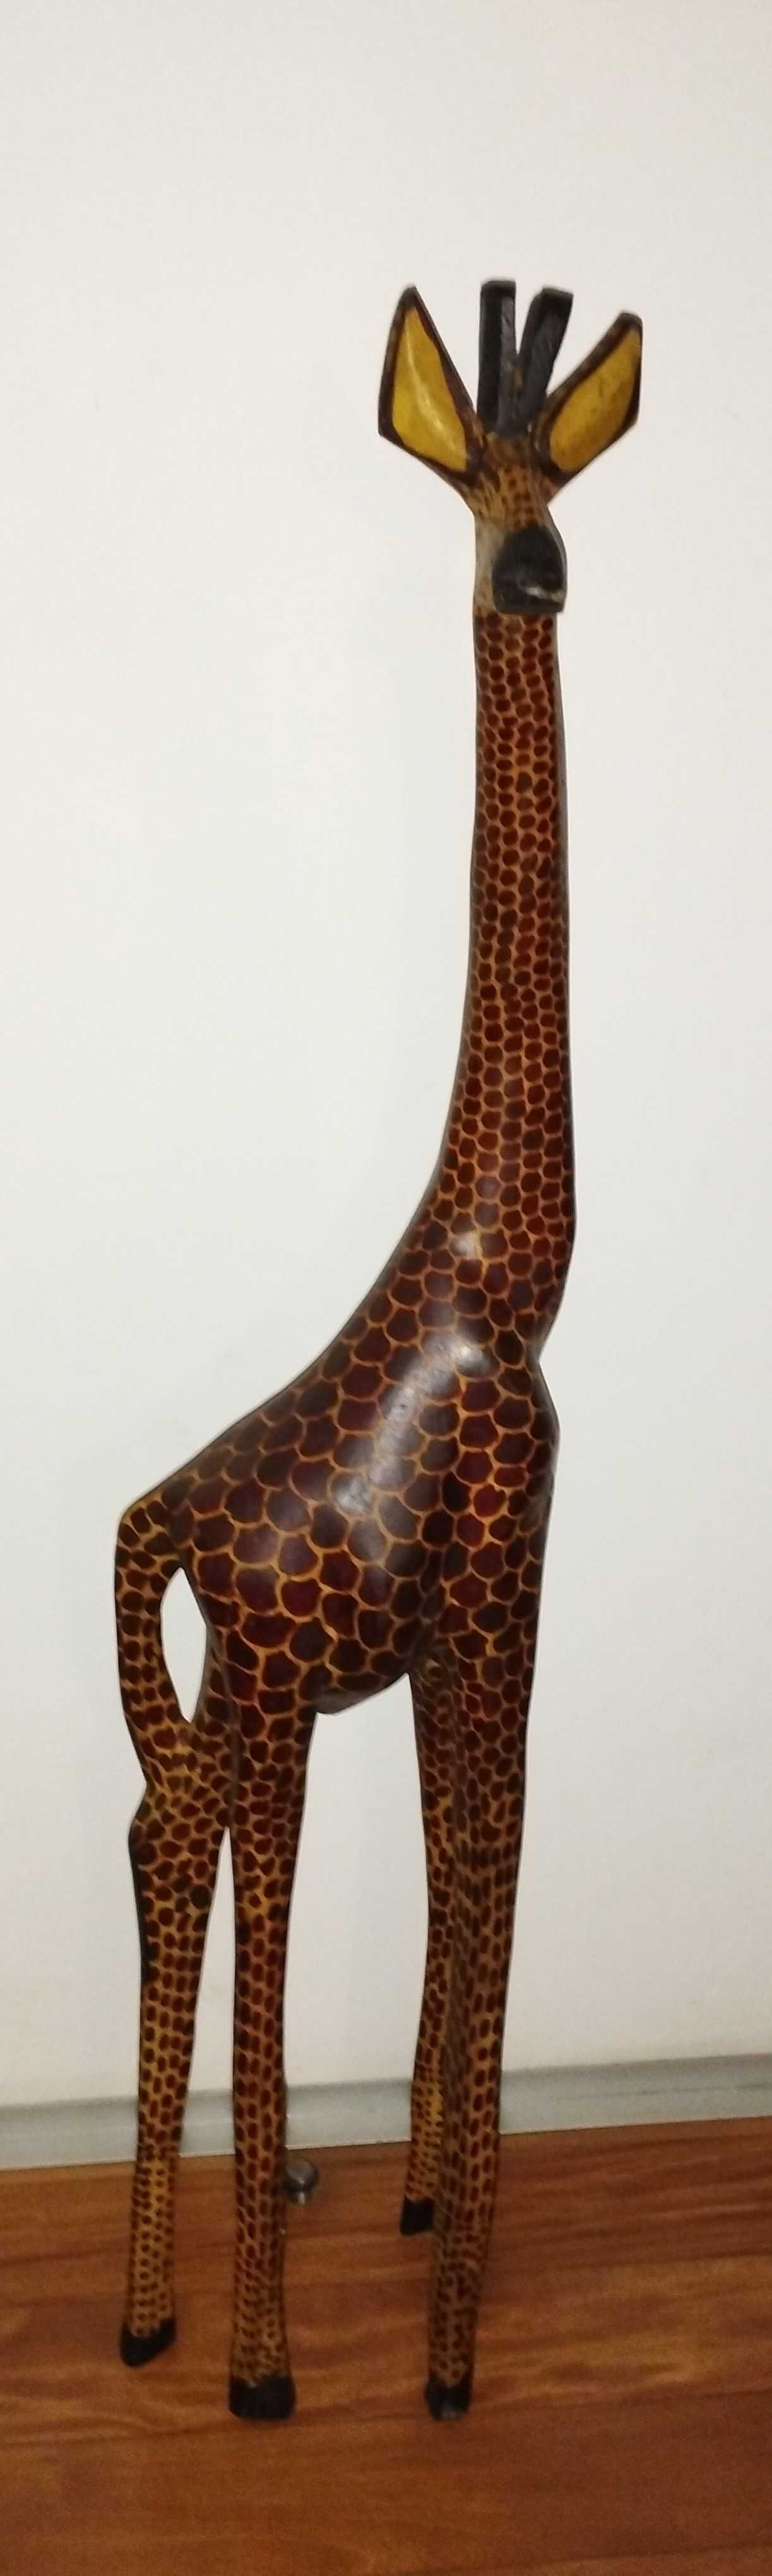 Estatueta de girafa